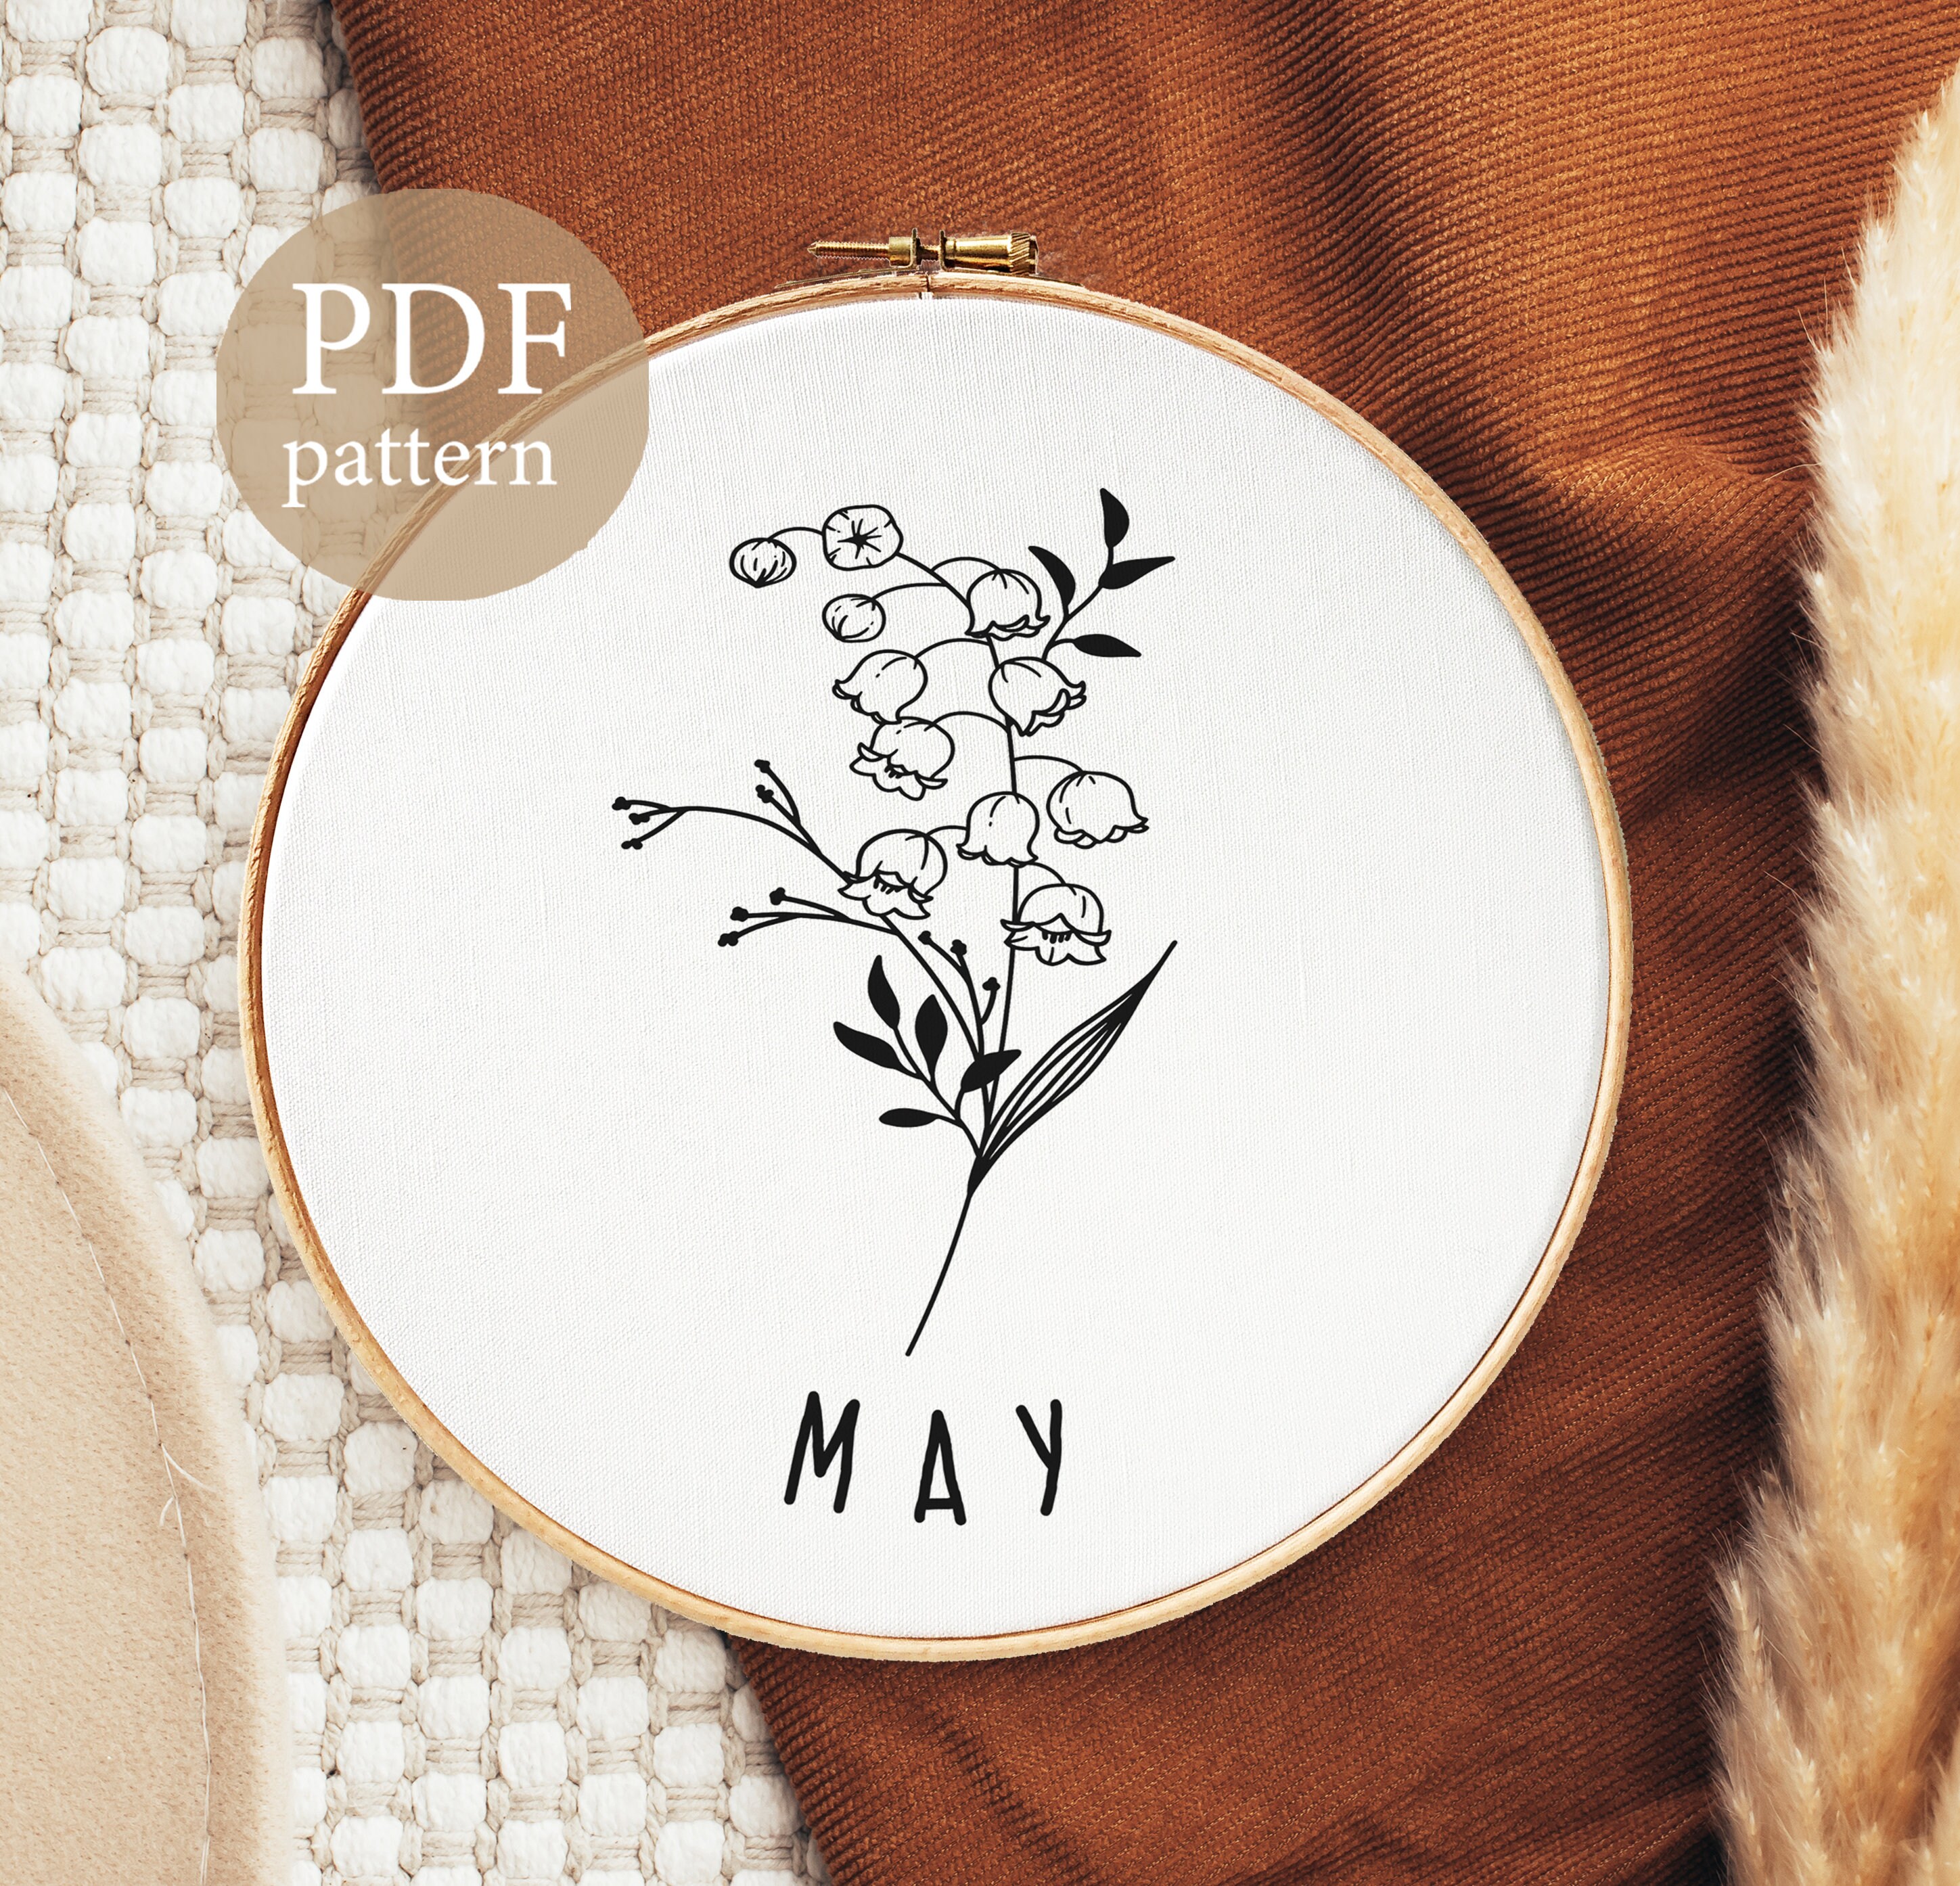 Winterberry PDF Hand Embroidery Pattern – Peony Patterns